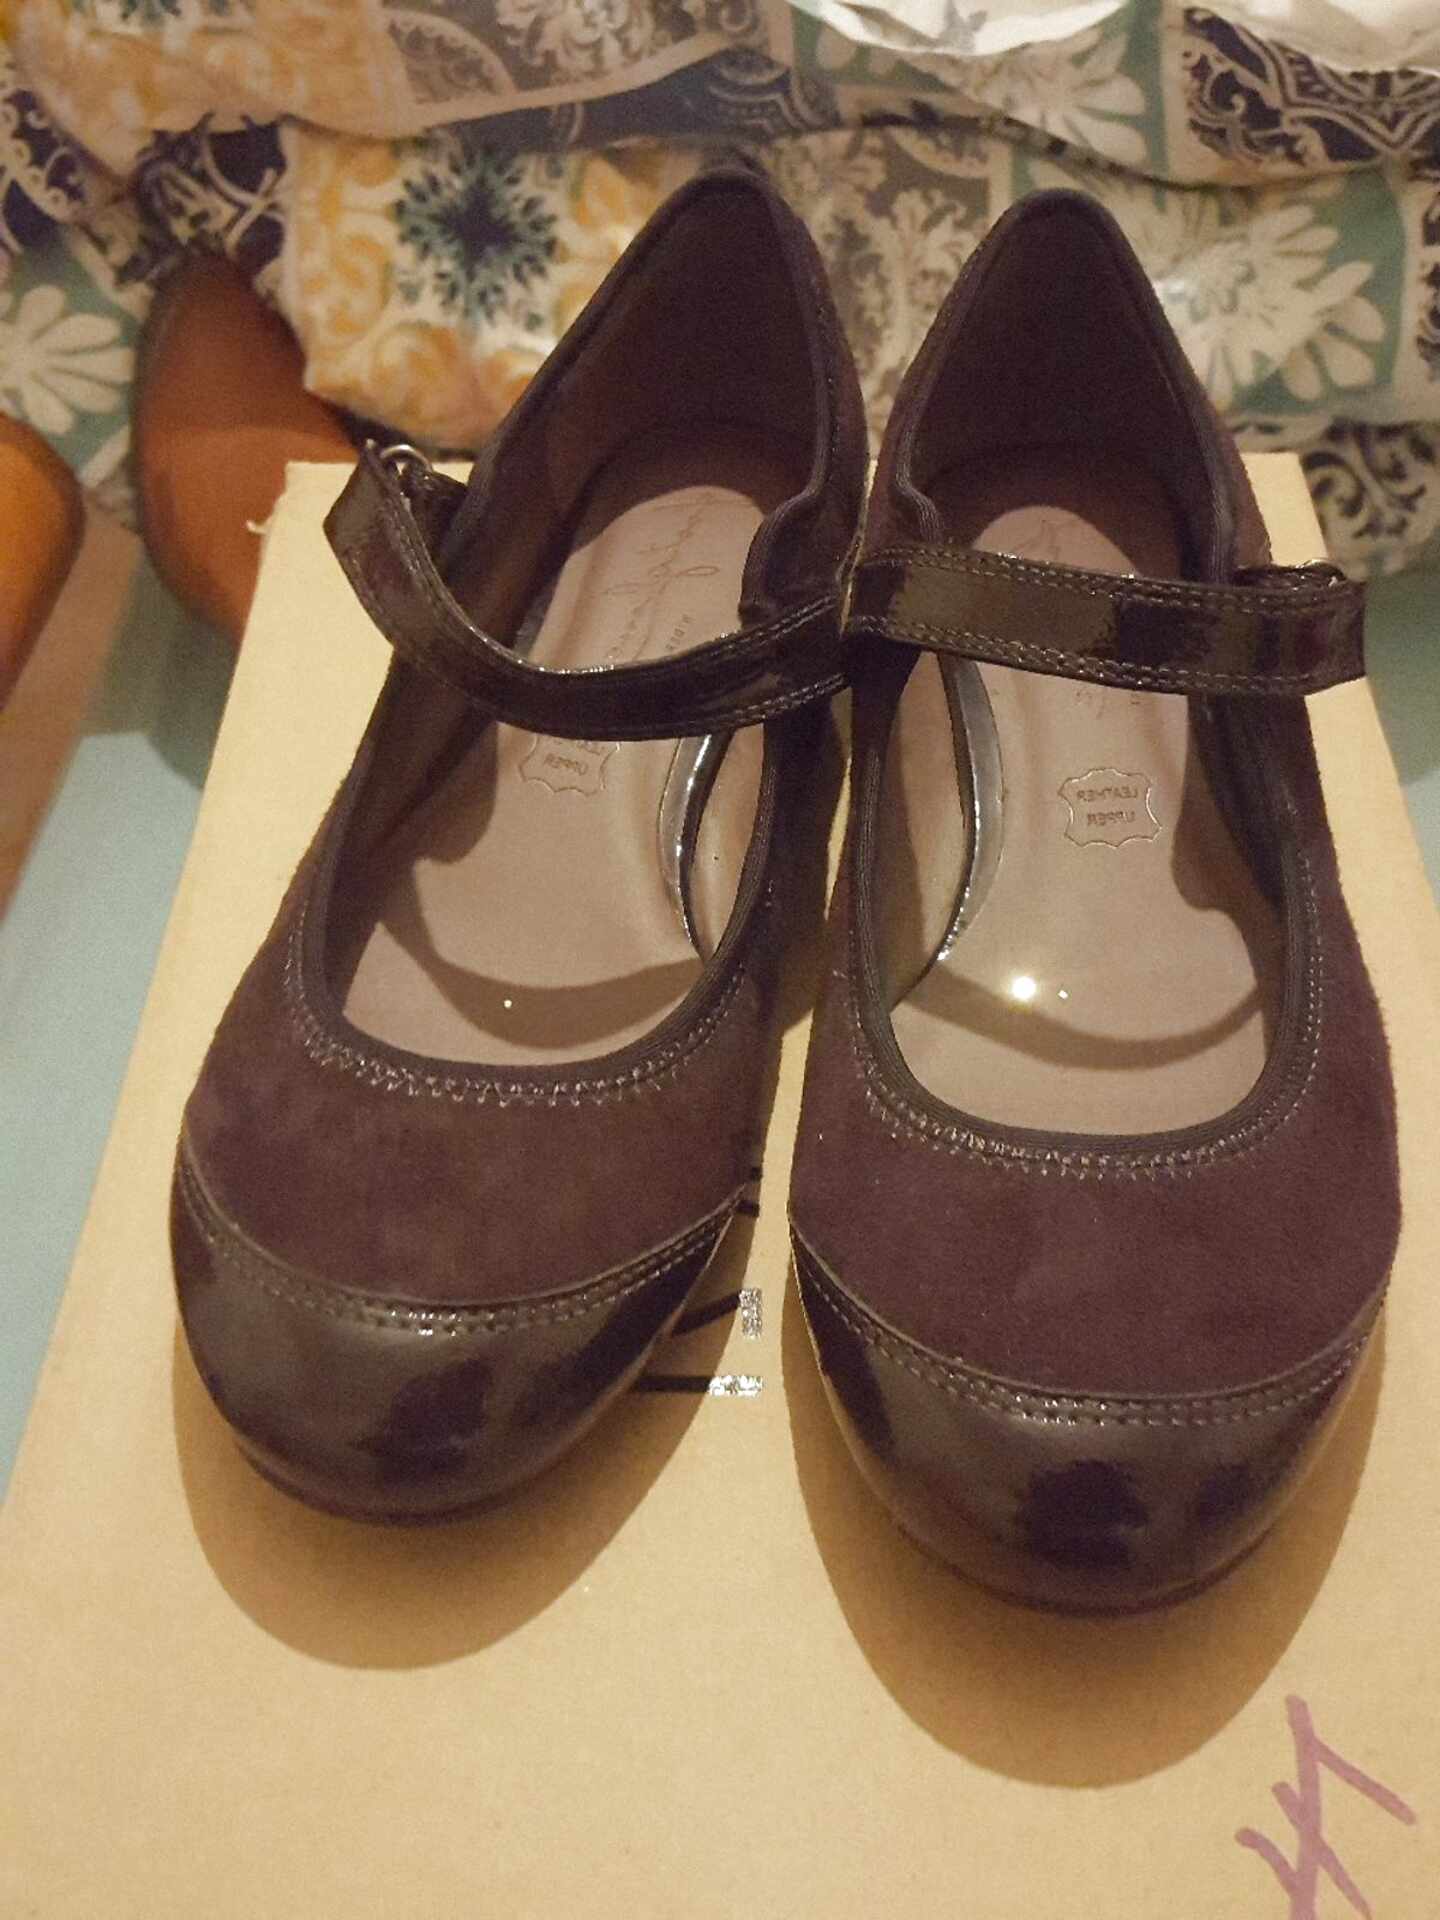 footglove original shoes